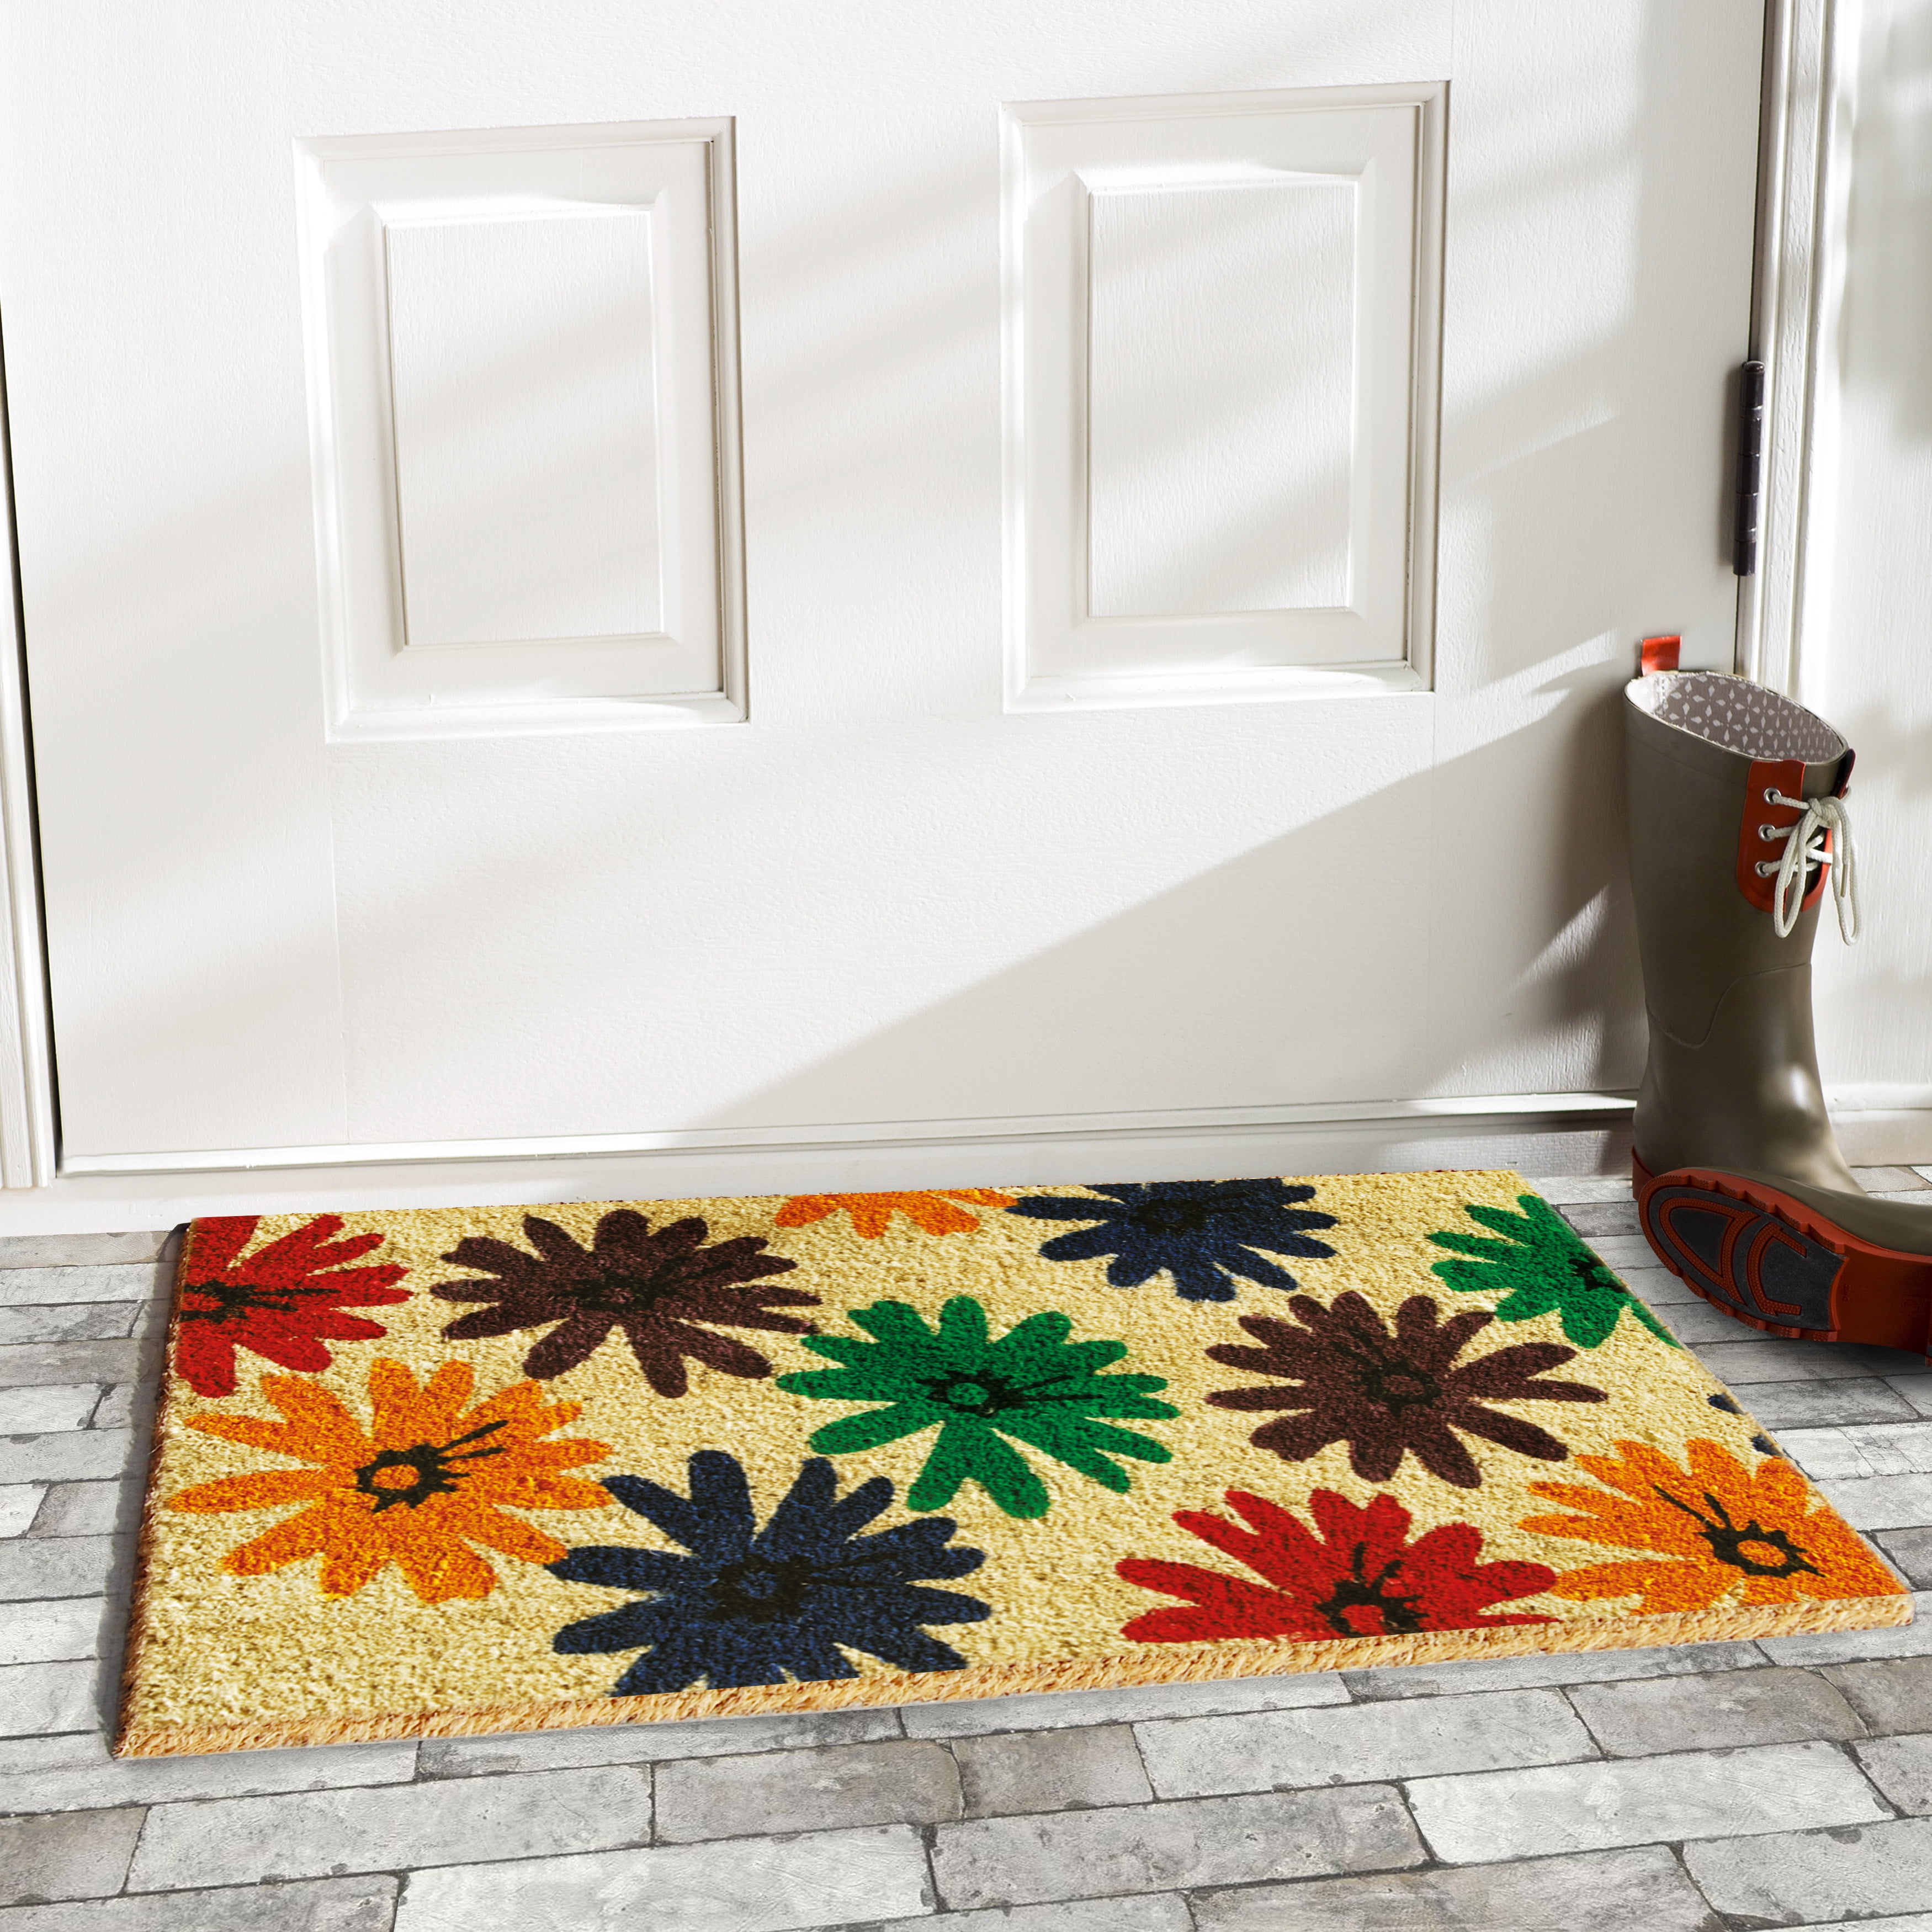 Good Day Sunshine” Coir Outdoor Doormat, (18” x 30”)